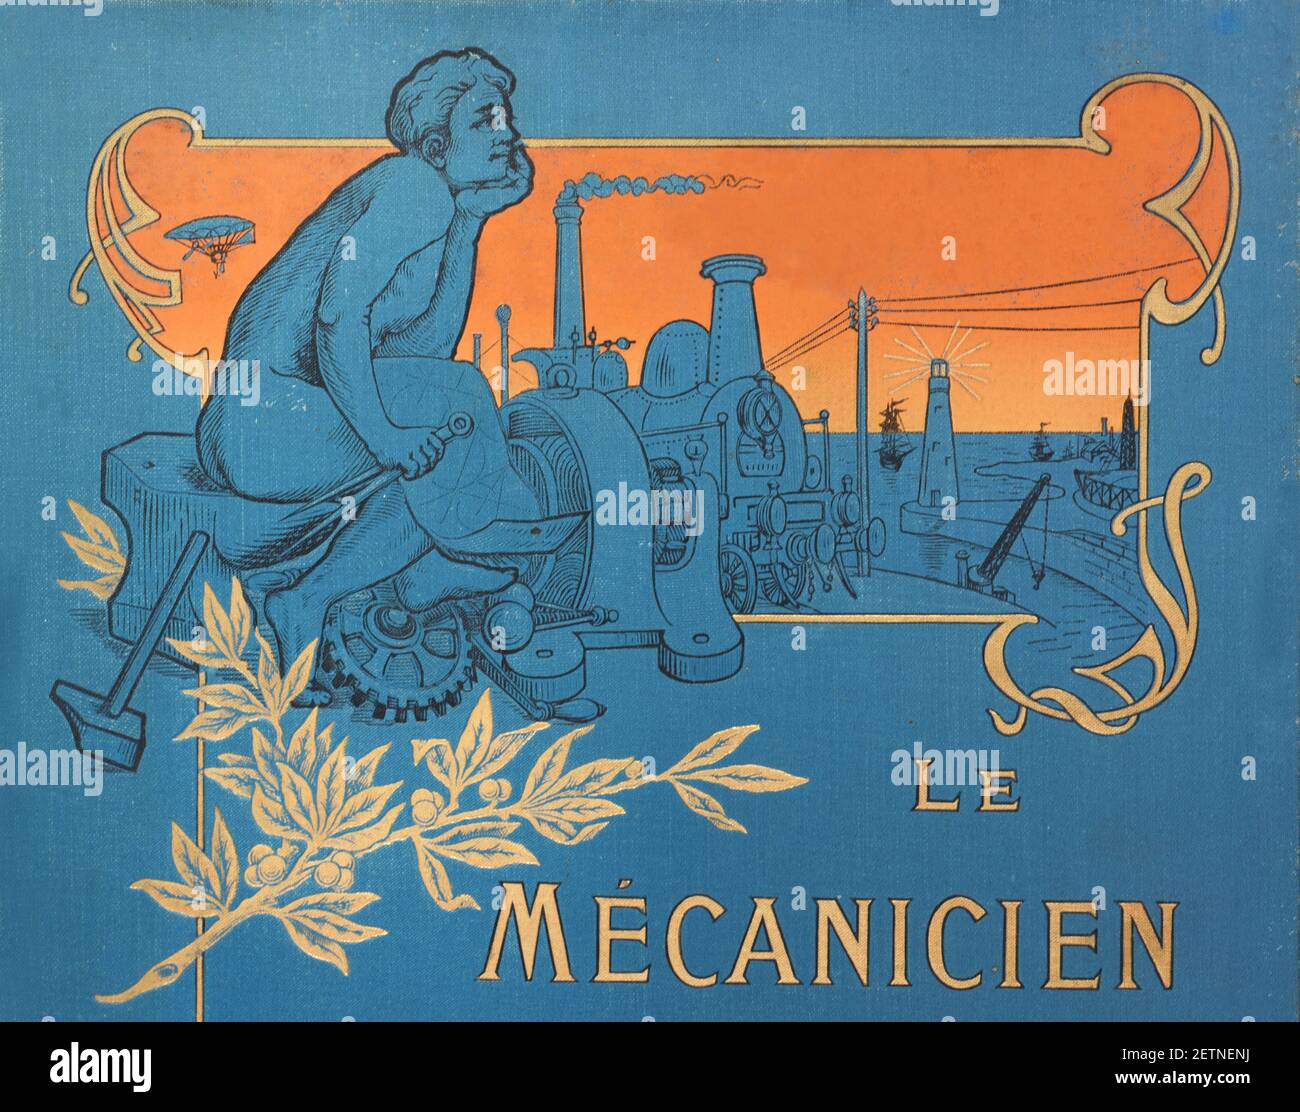 Détail du livre Art Nouveau ou Art Déco couverture le Mechanicien moderne avec paysage industriel, machines, technologie et mécanique pensive c1920 Banque D'Images